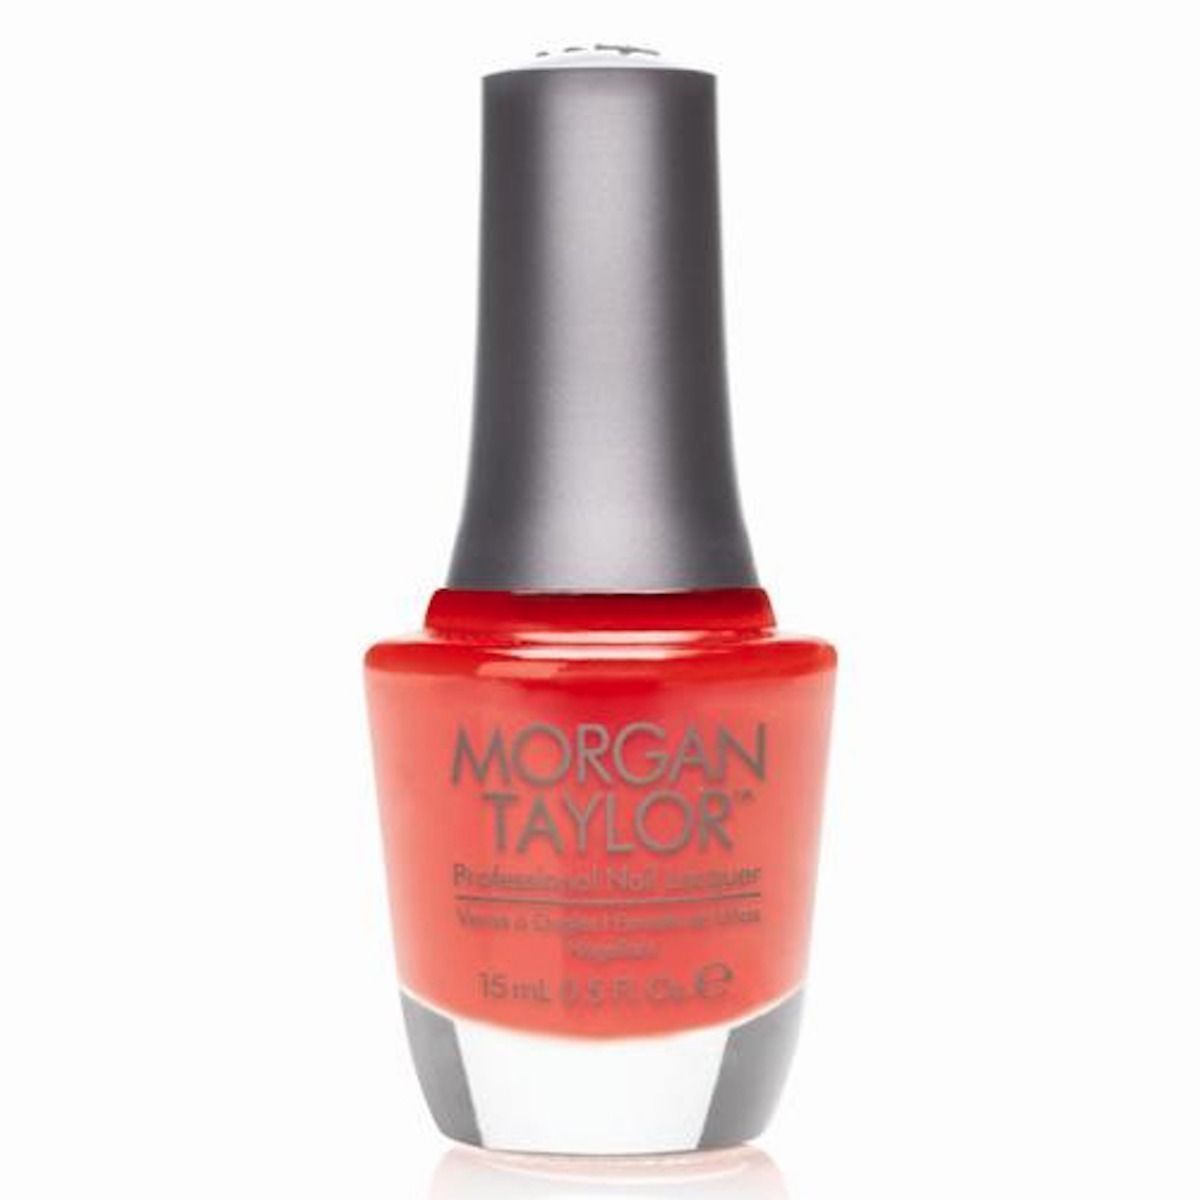 Morgan Taylor Nail Polish Orange You Glad 50027 15ml